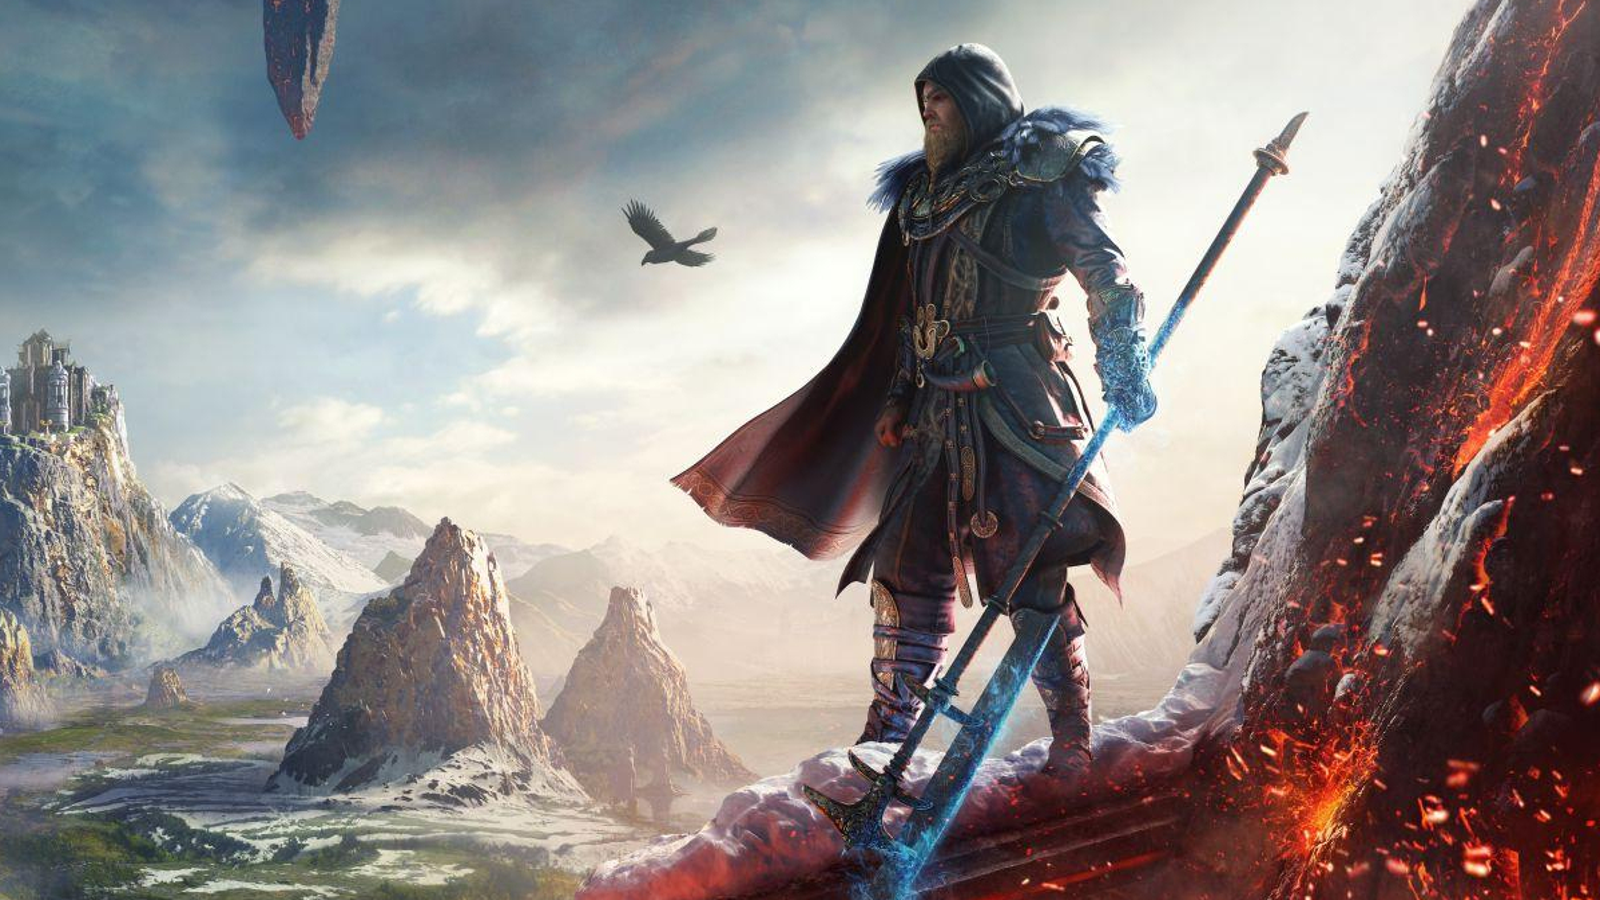 Assassin's Creed Valhalla Dawn of Ragnarök for PC,PS5 (Digital),Xbox  (Digital) Buy